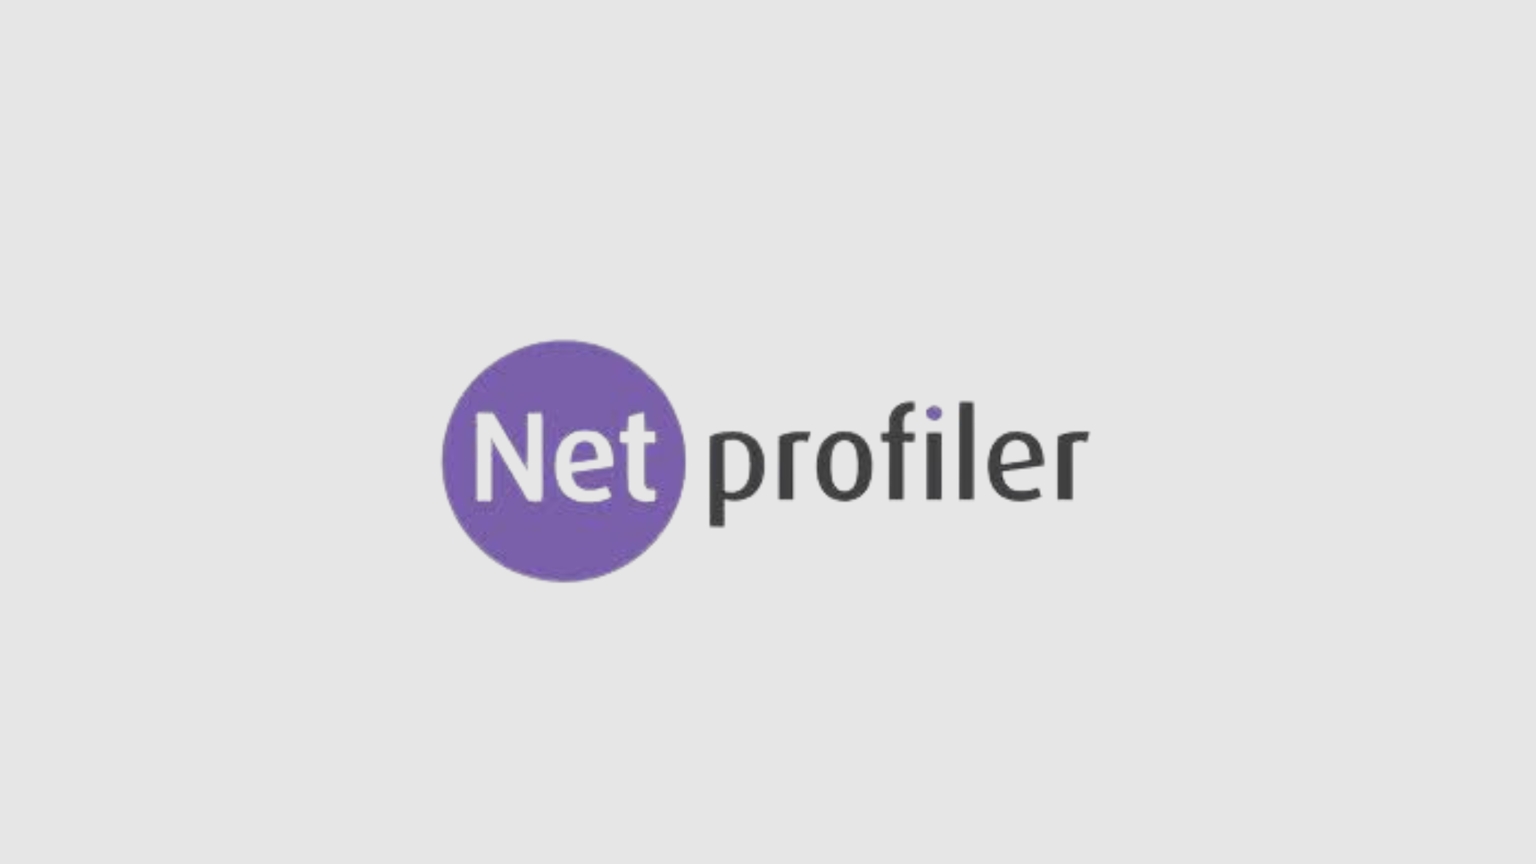 Hoe Netprofiler de advertentiedruk van klanten verlaagt via MarktMentor